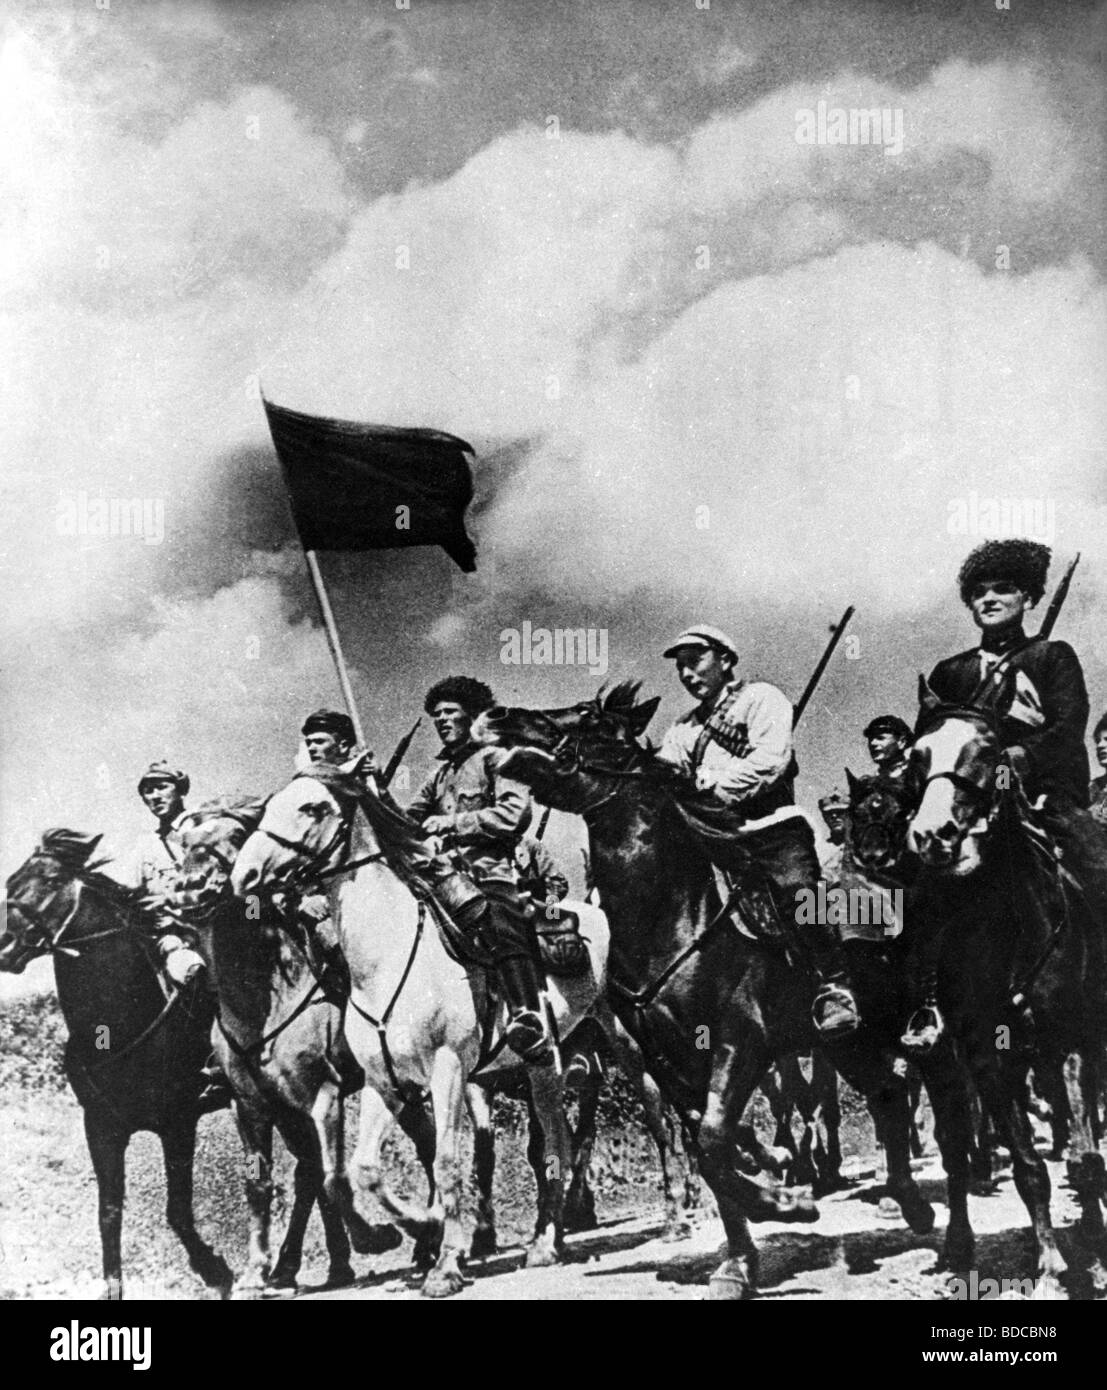 Фото гражданской войны в России 1917-1922